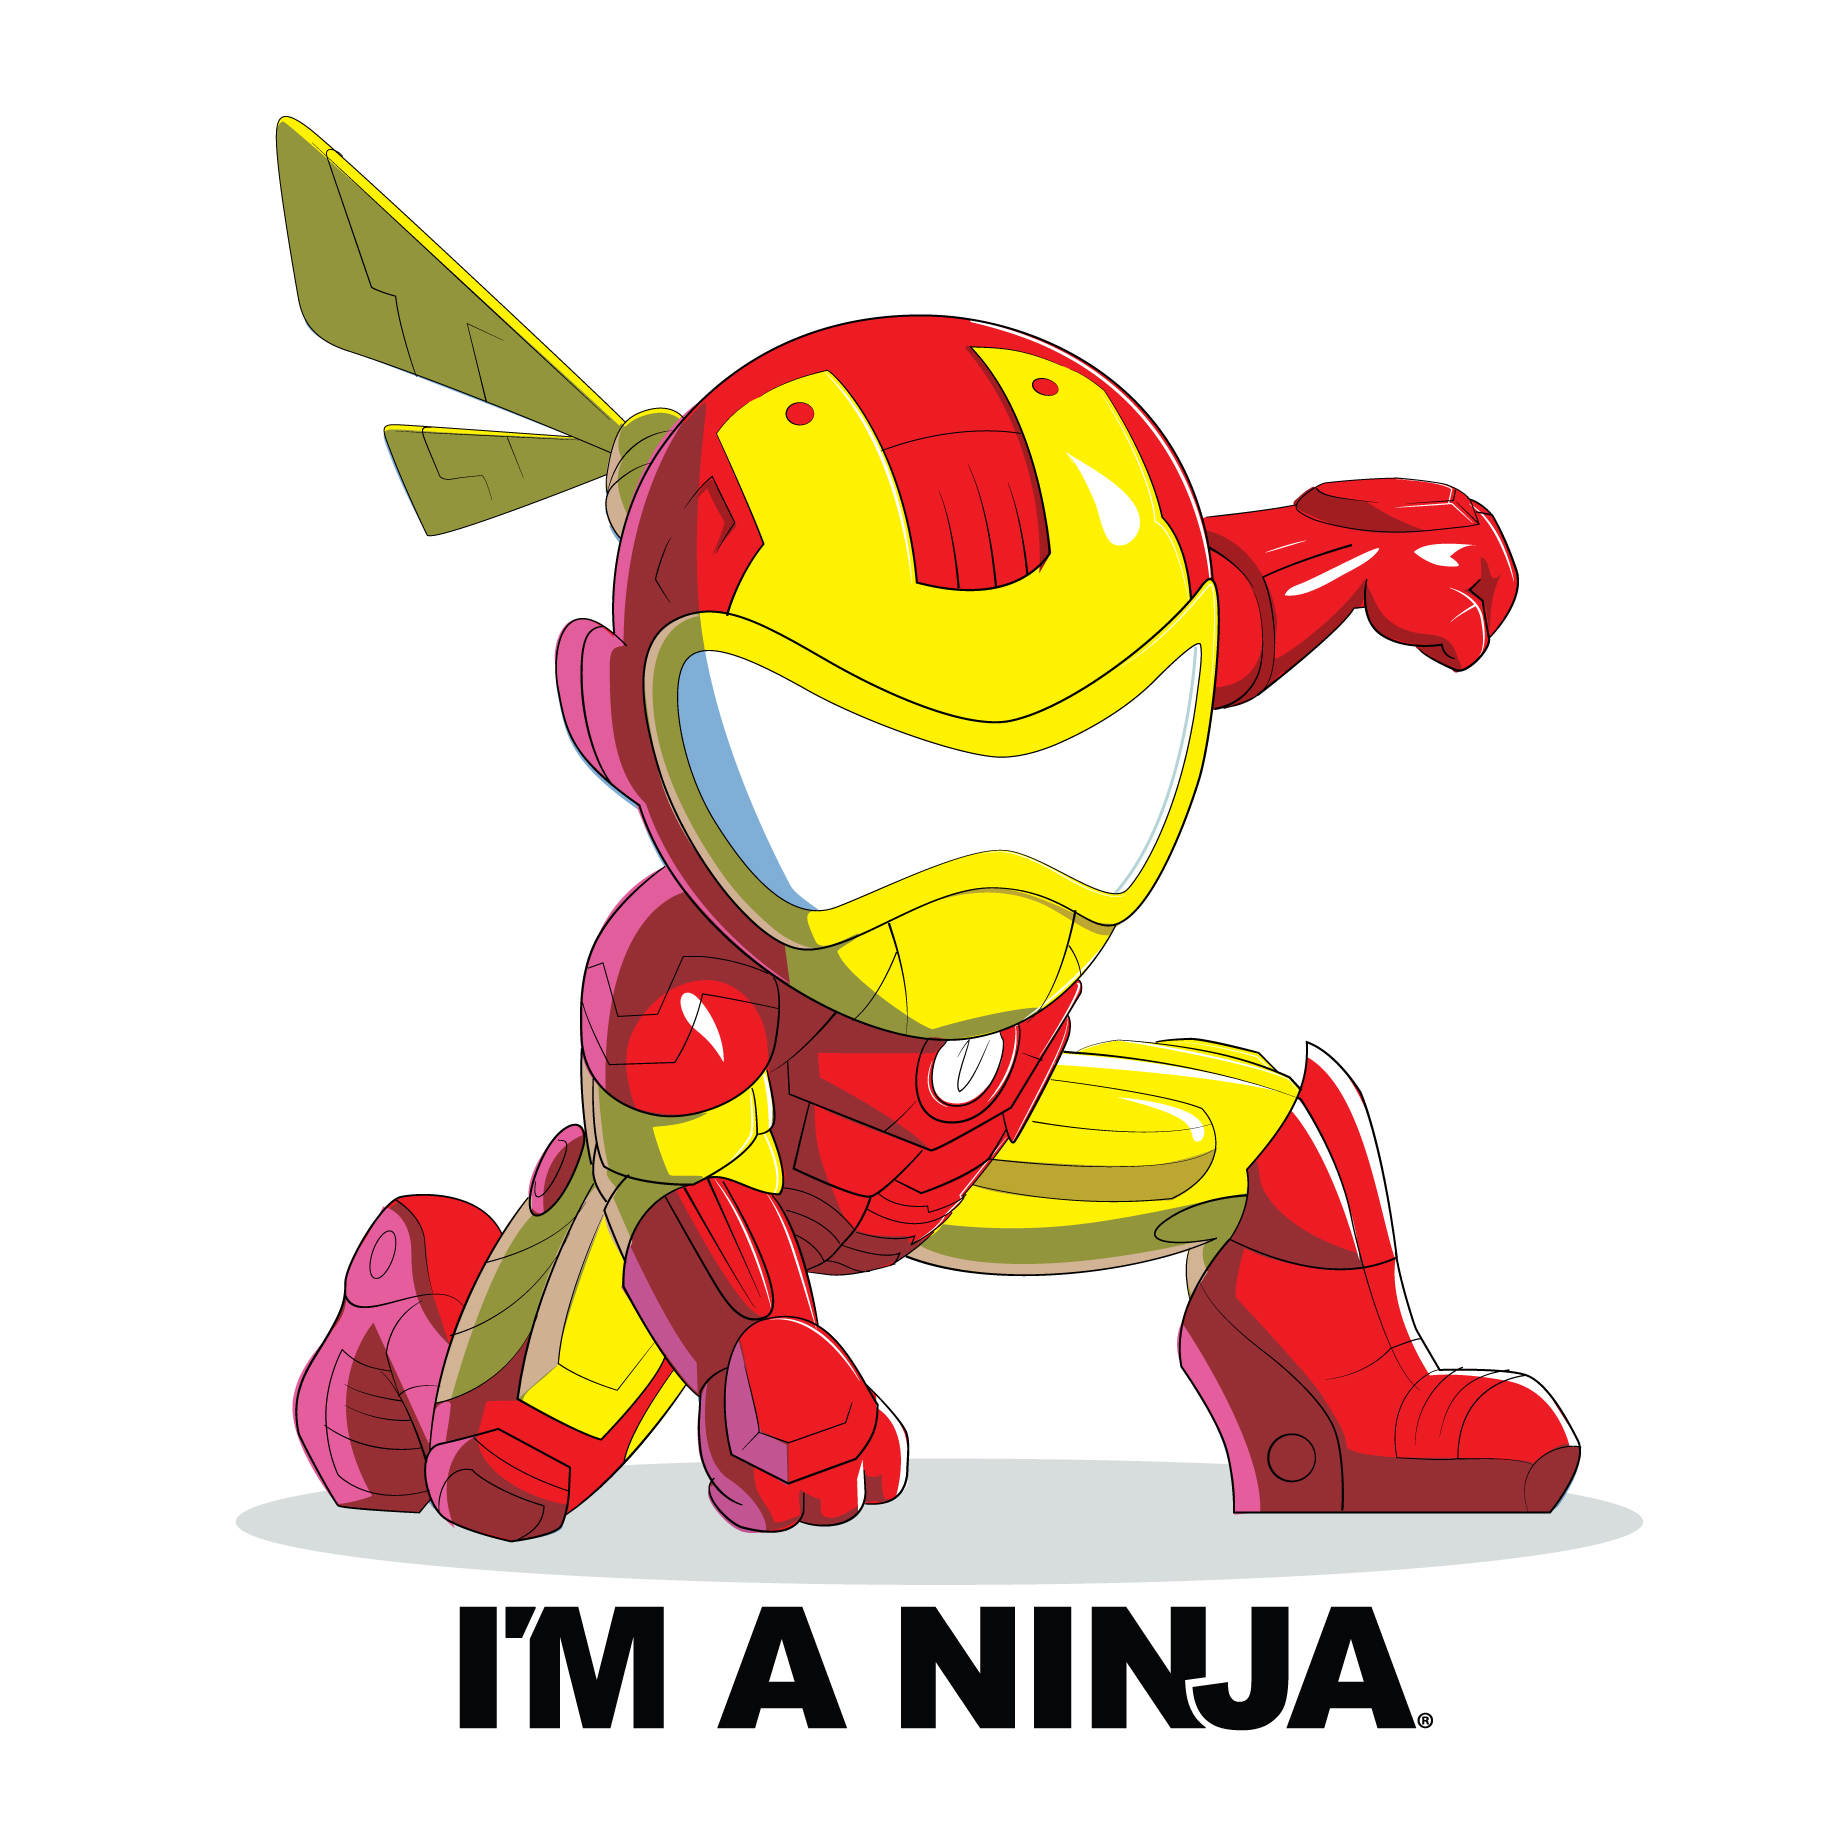 Iron Man x I'M A NINJA